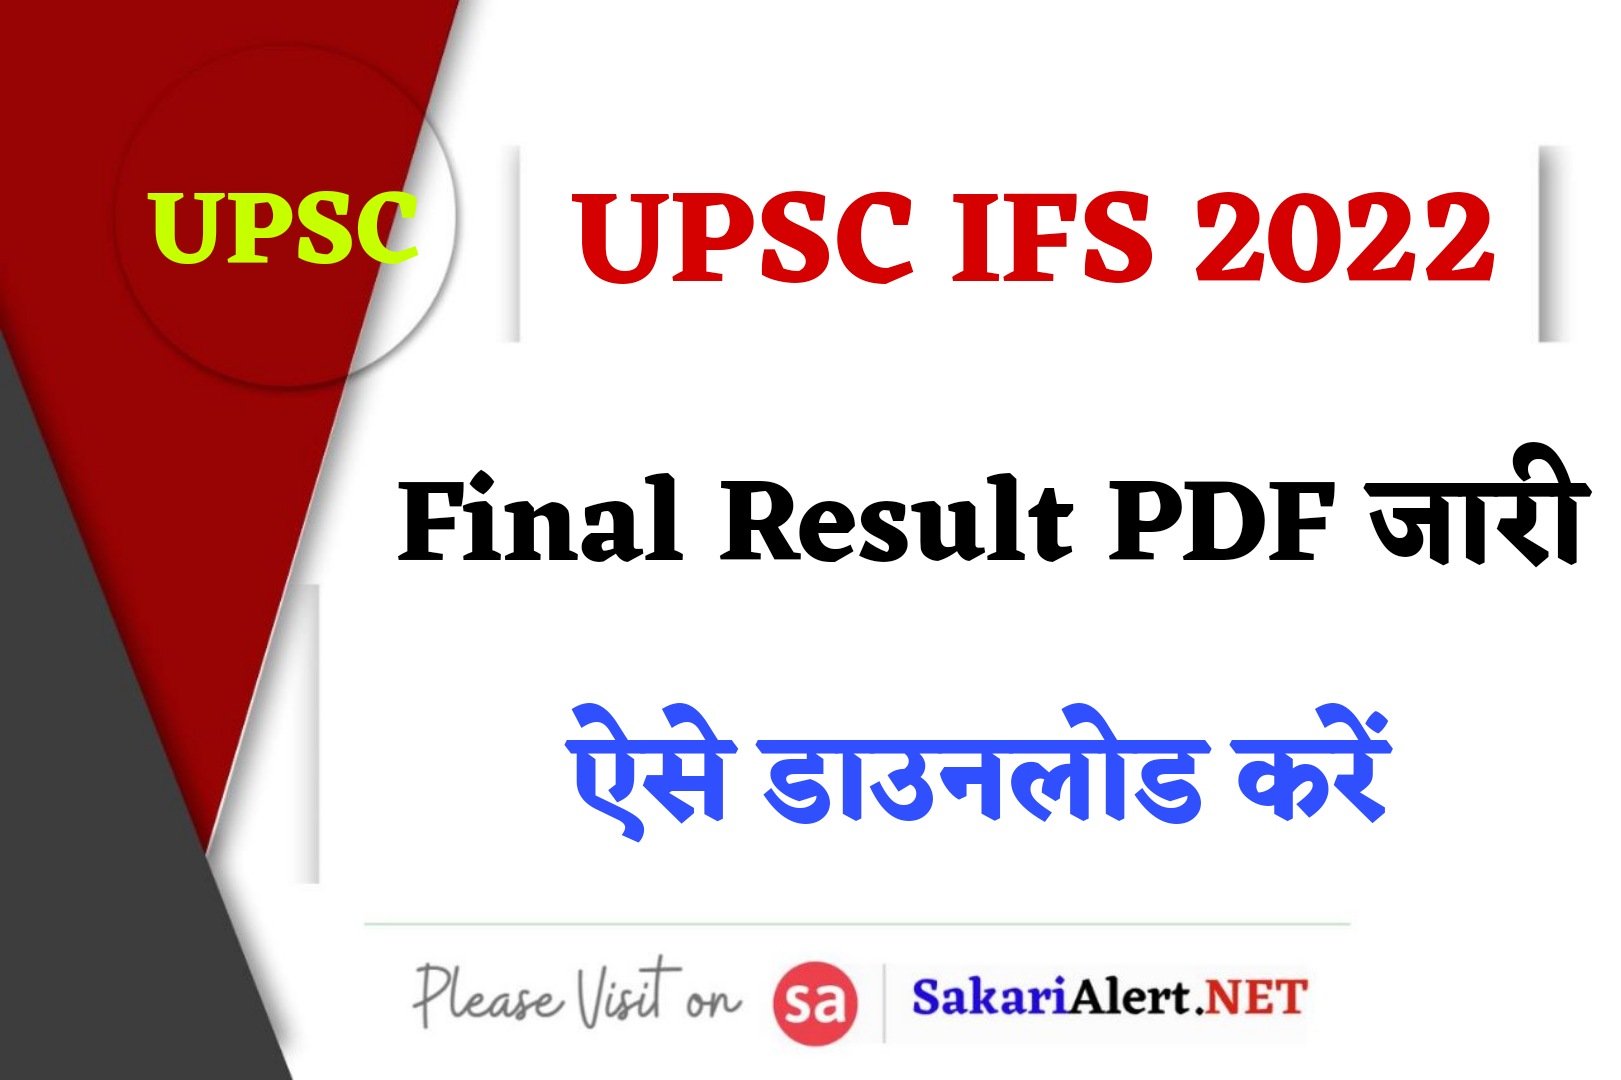 UPSC IFS 2022 Final Result